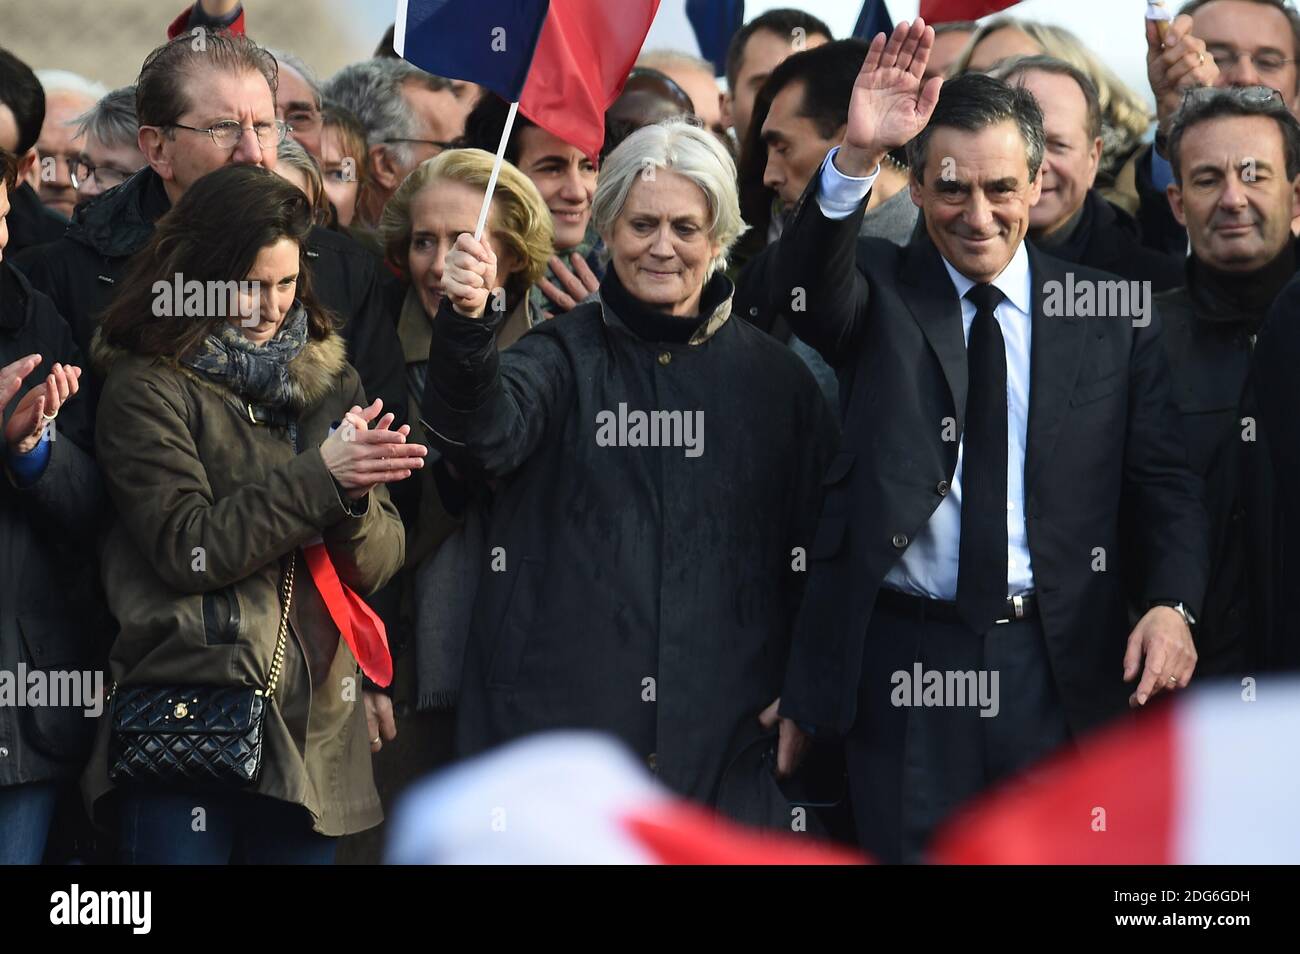 François Fillon avec son épouse Penelope Fillon et sa fille Marie Fillon  (L) vu après ses découses lors d'un rallye de campagne pour soutenir sa  candidature présidentielle française pour le parti de